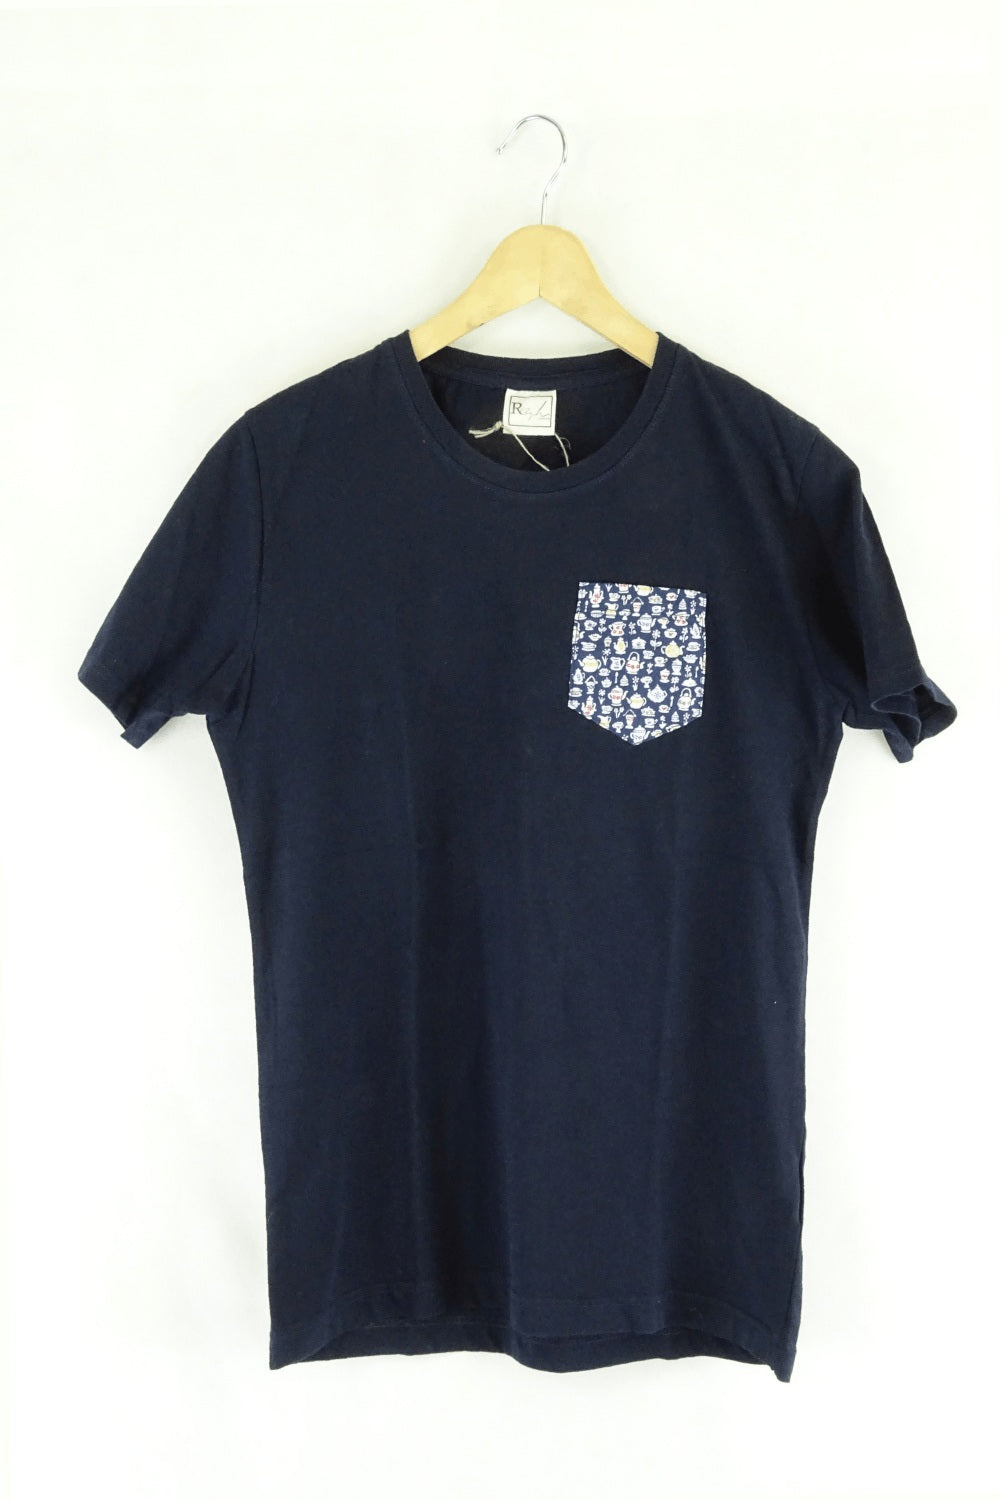 Ruby London Navy T-Shirt Sclothing